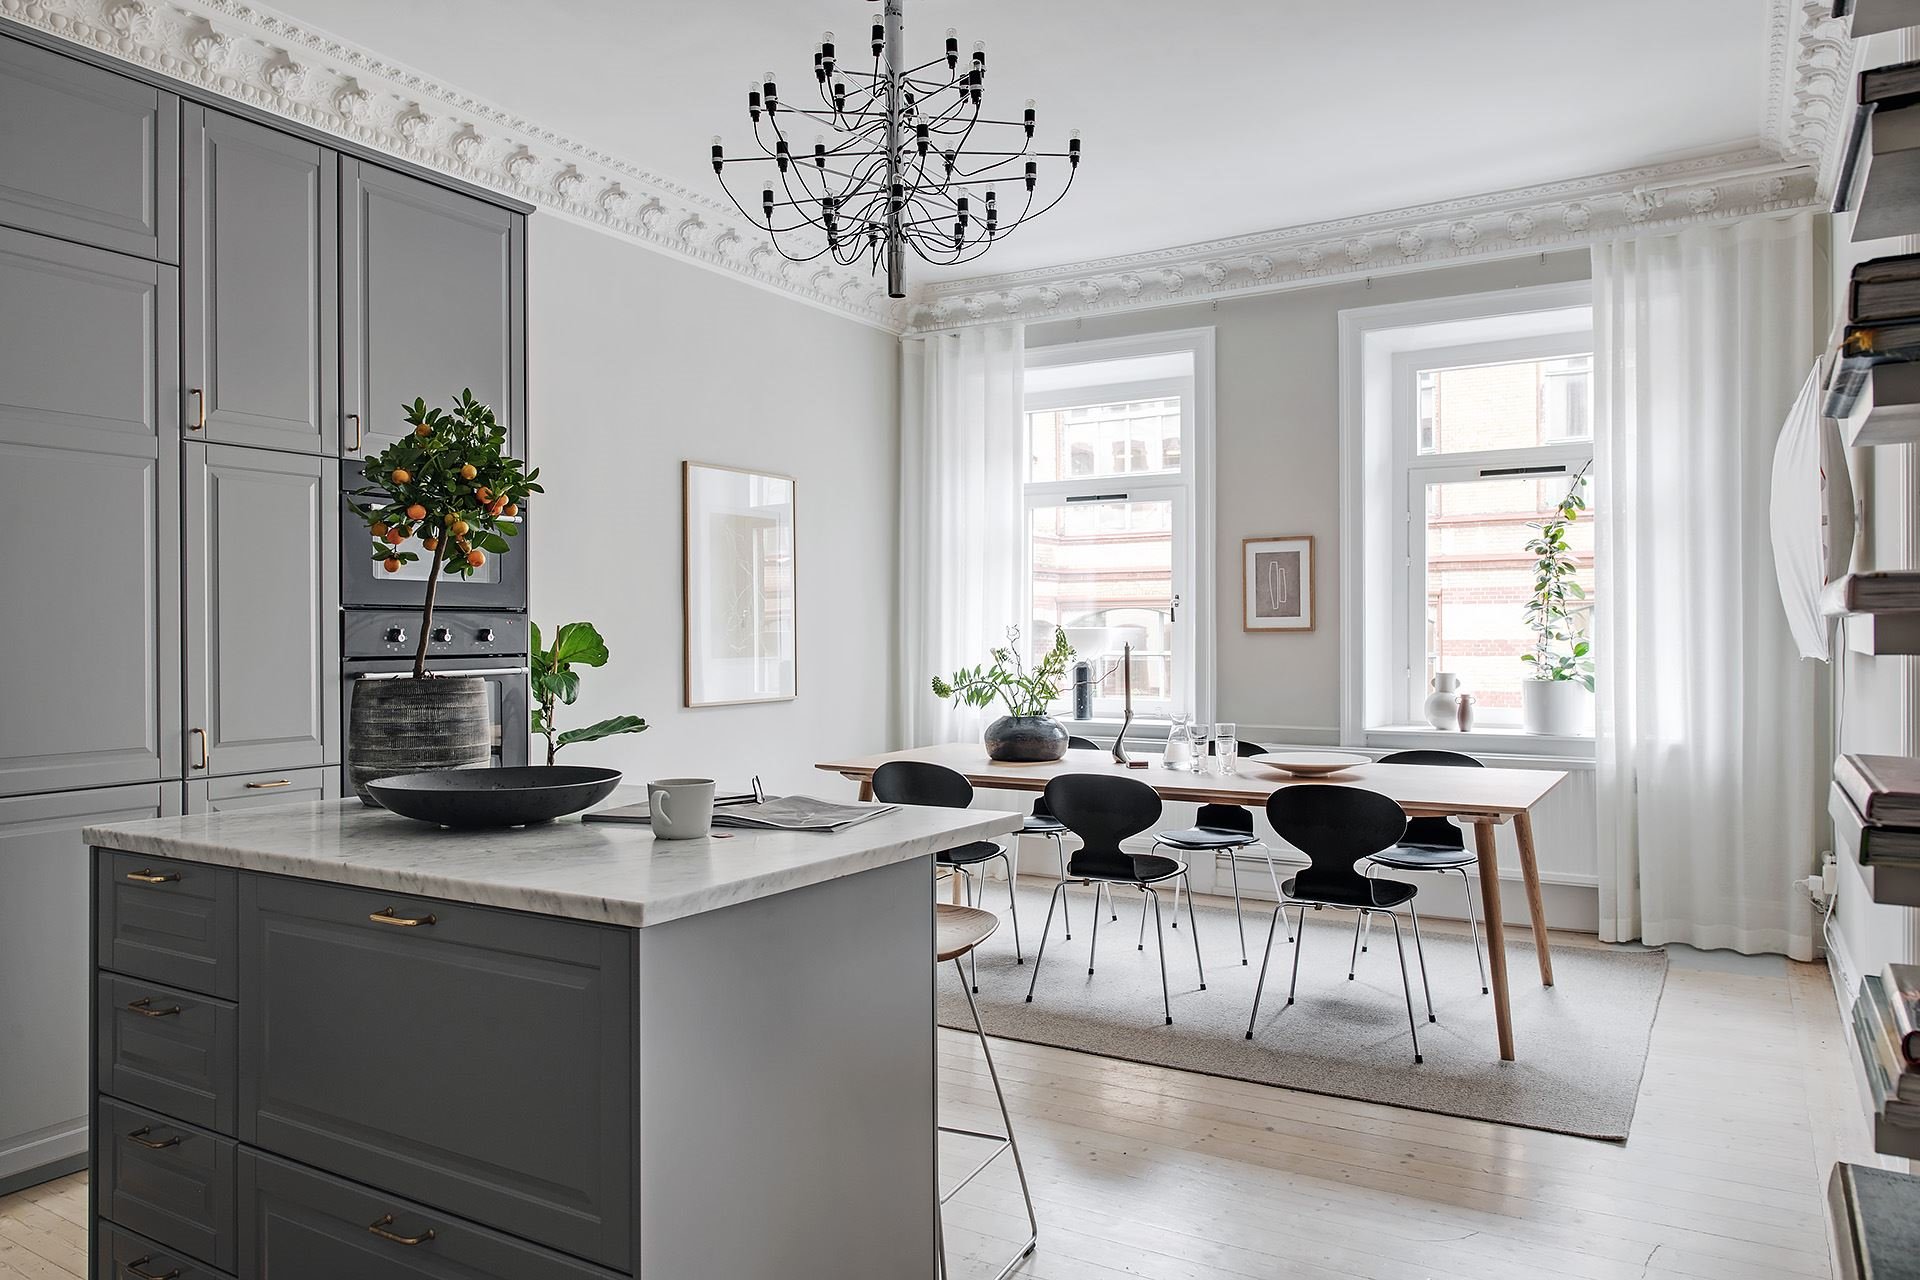 Piso con decoracion nordica y paredes en color gris con molduras cocina abierta al comedor